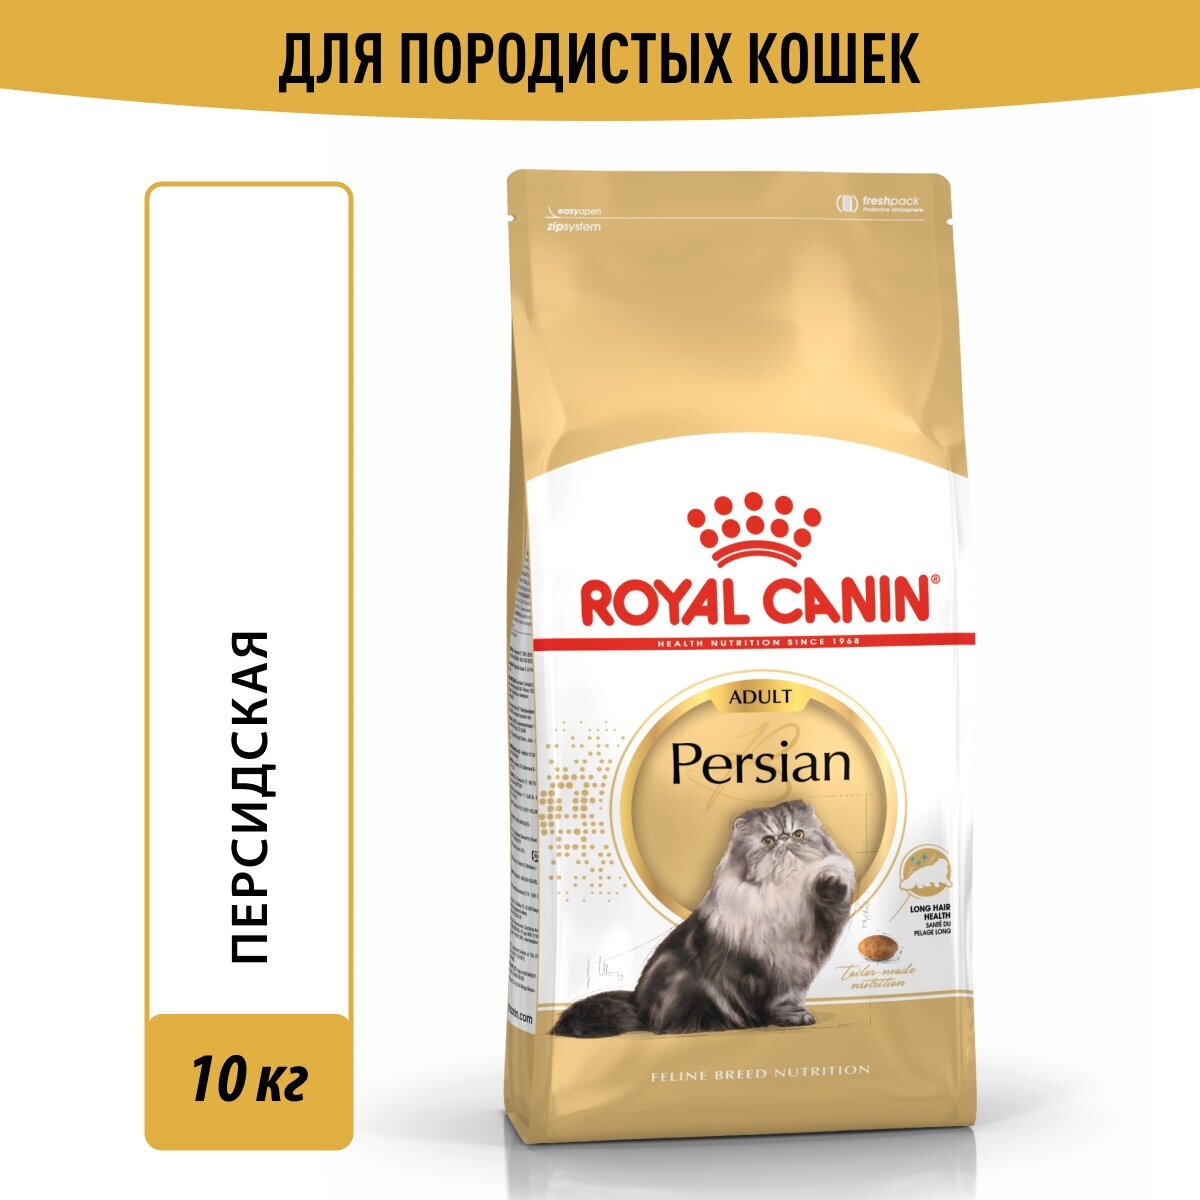 Сухой корм для кошек Royal Canin Persian Adult для взрослых кошек персидской породы от 1 года до 12 лет